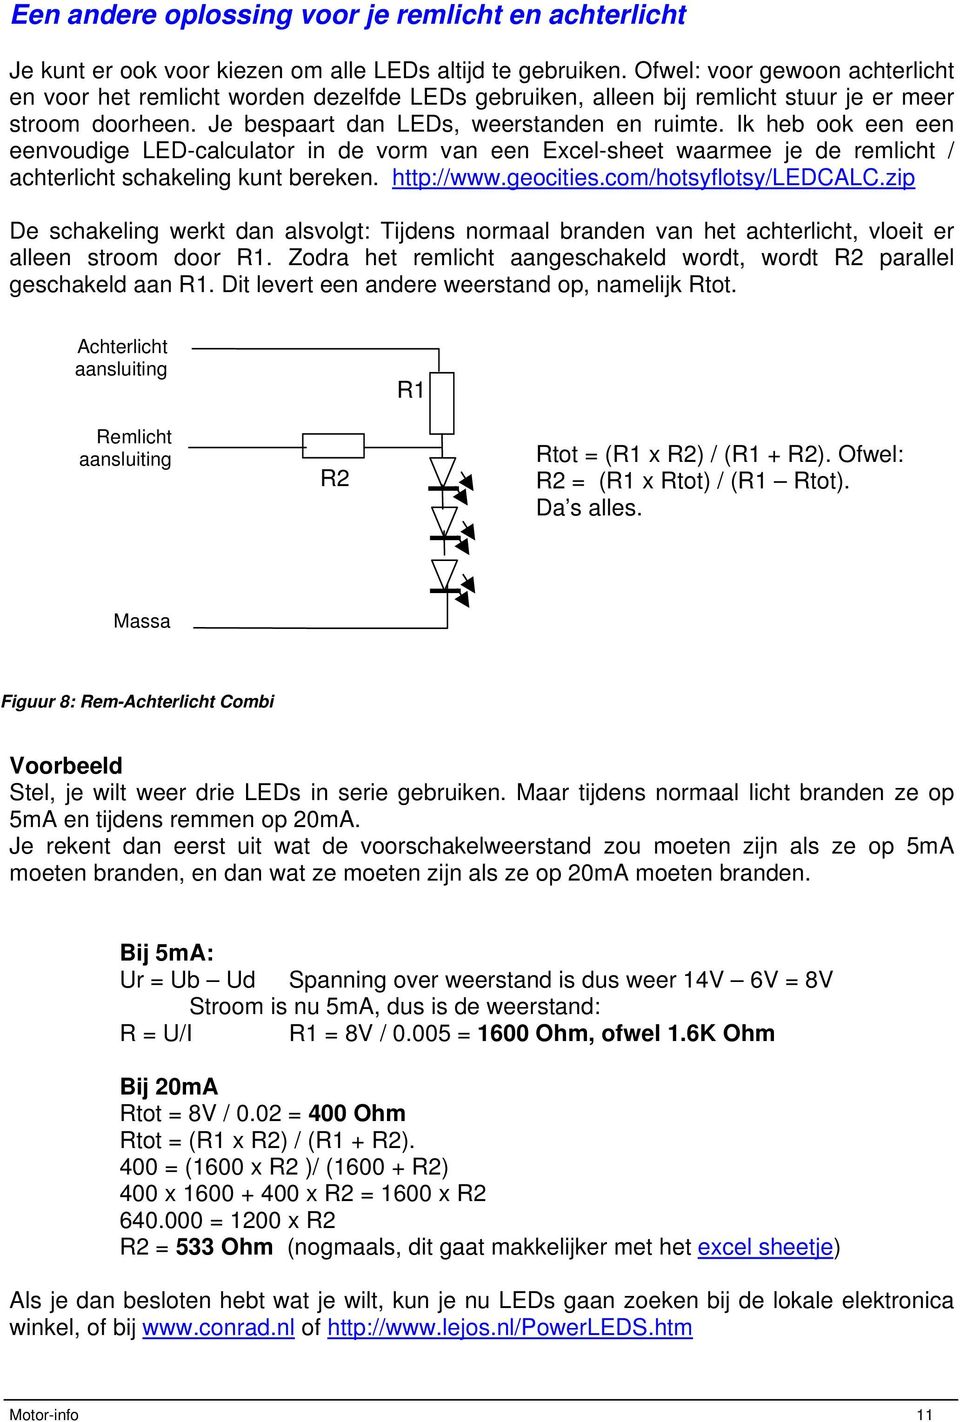 Motor info LED verlichting op de motor bouwen - PDF Gratis download